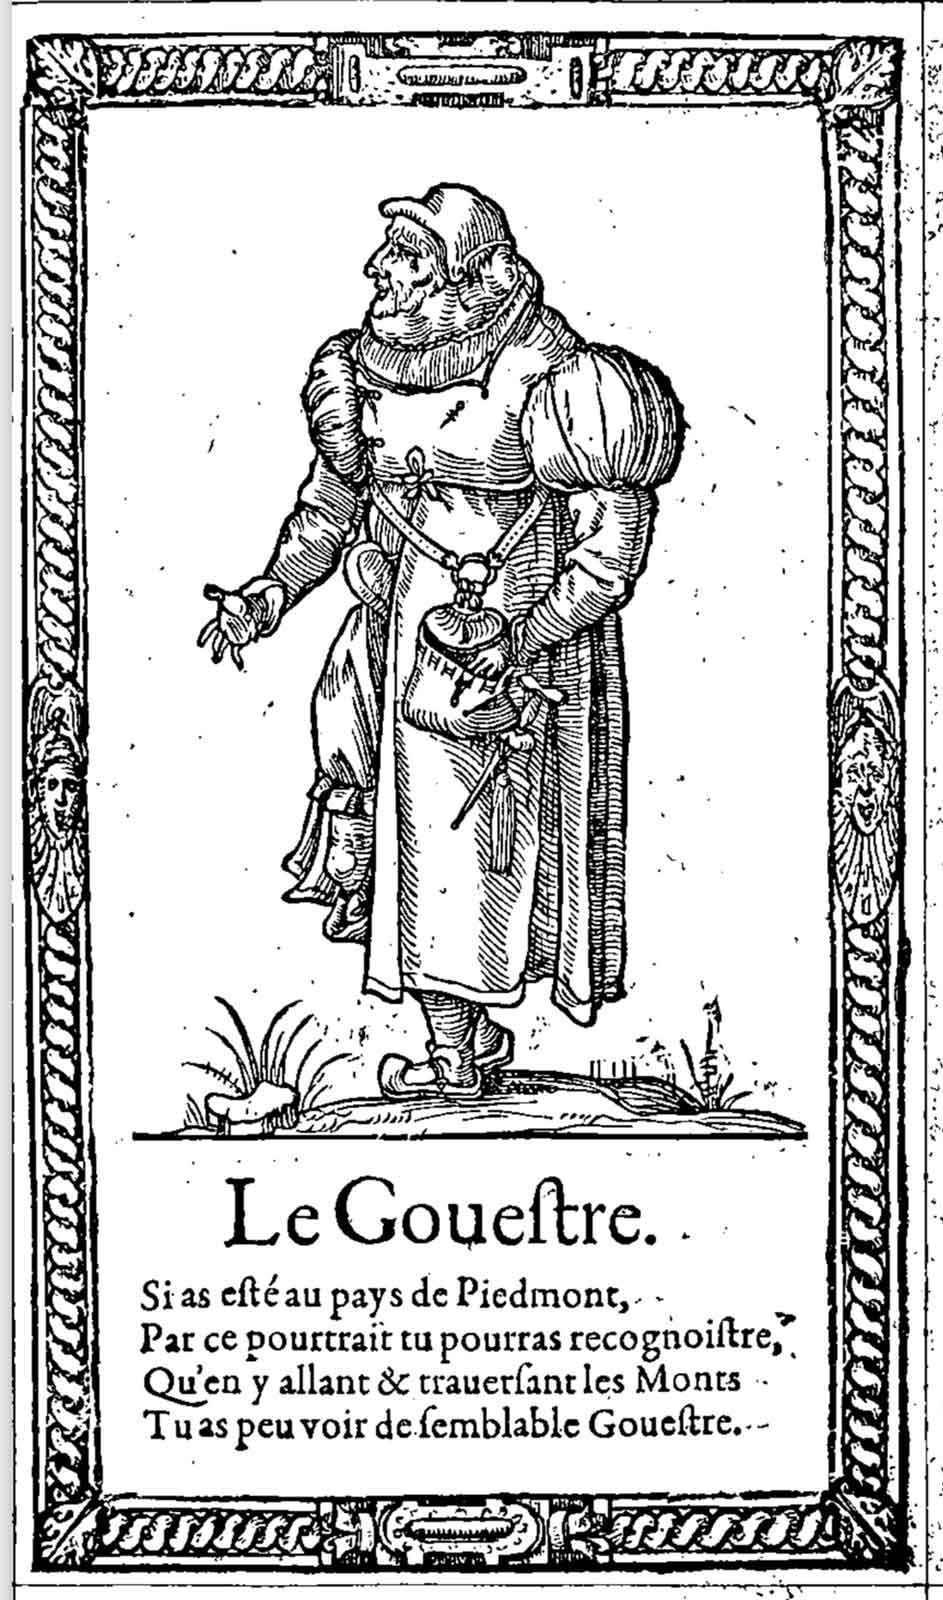 Le Gouestre. Desprez, Recueil de la diversité des habits (1564)